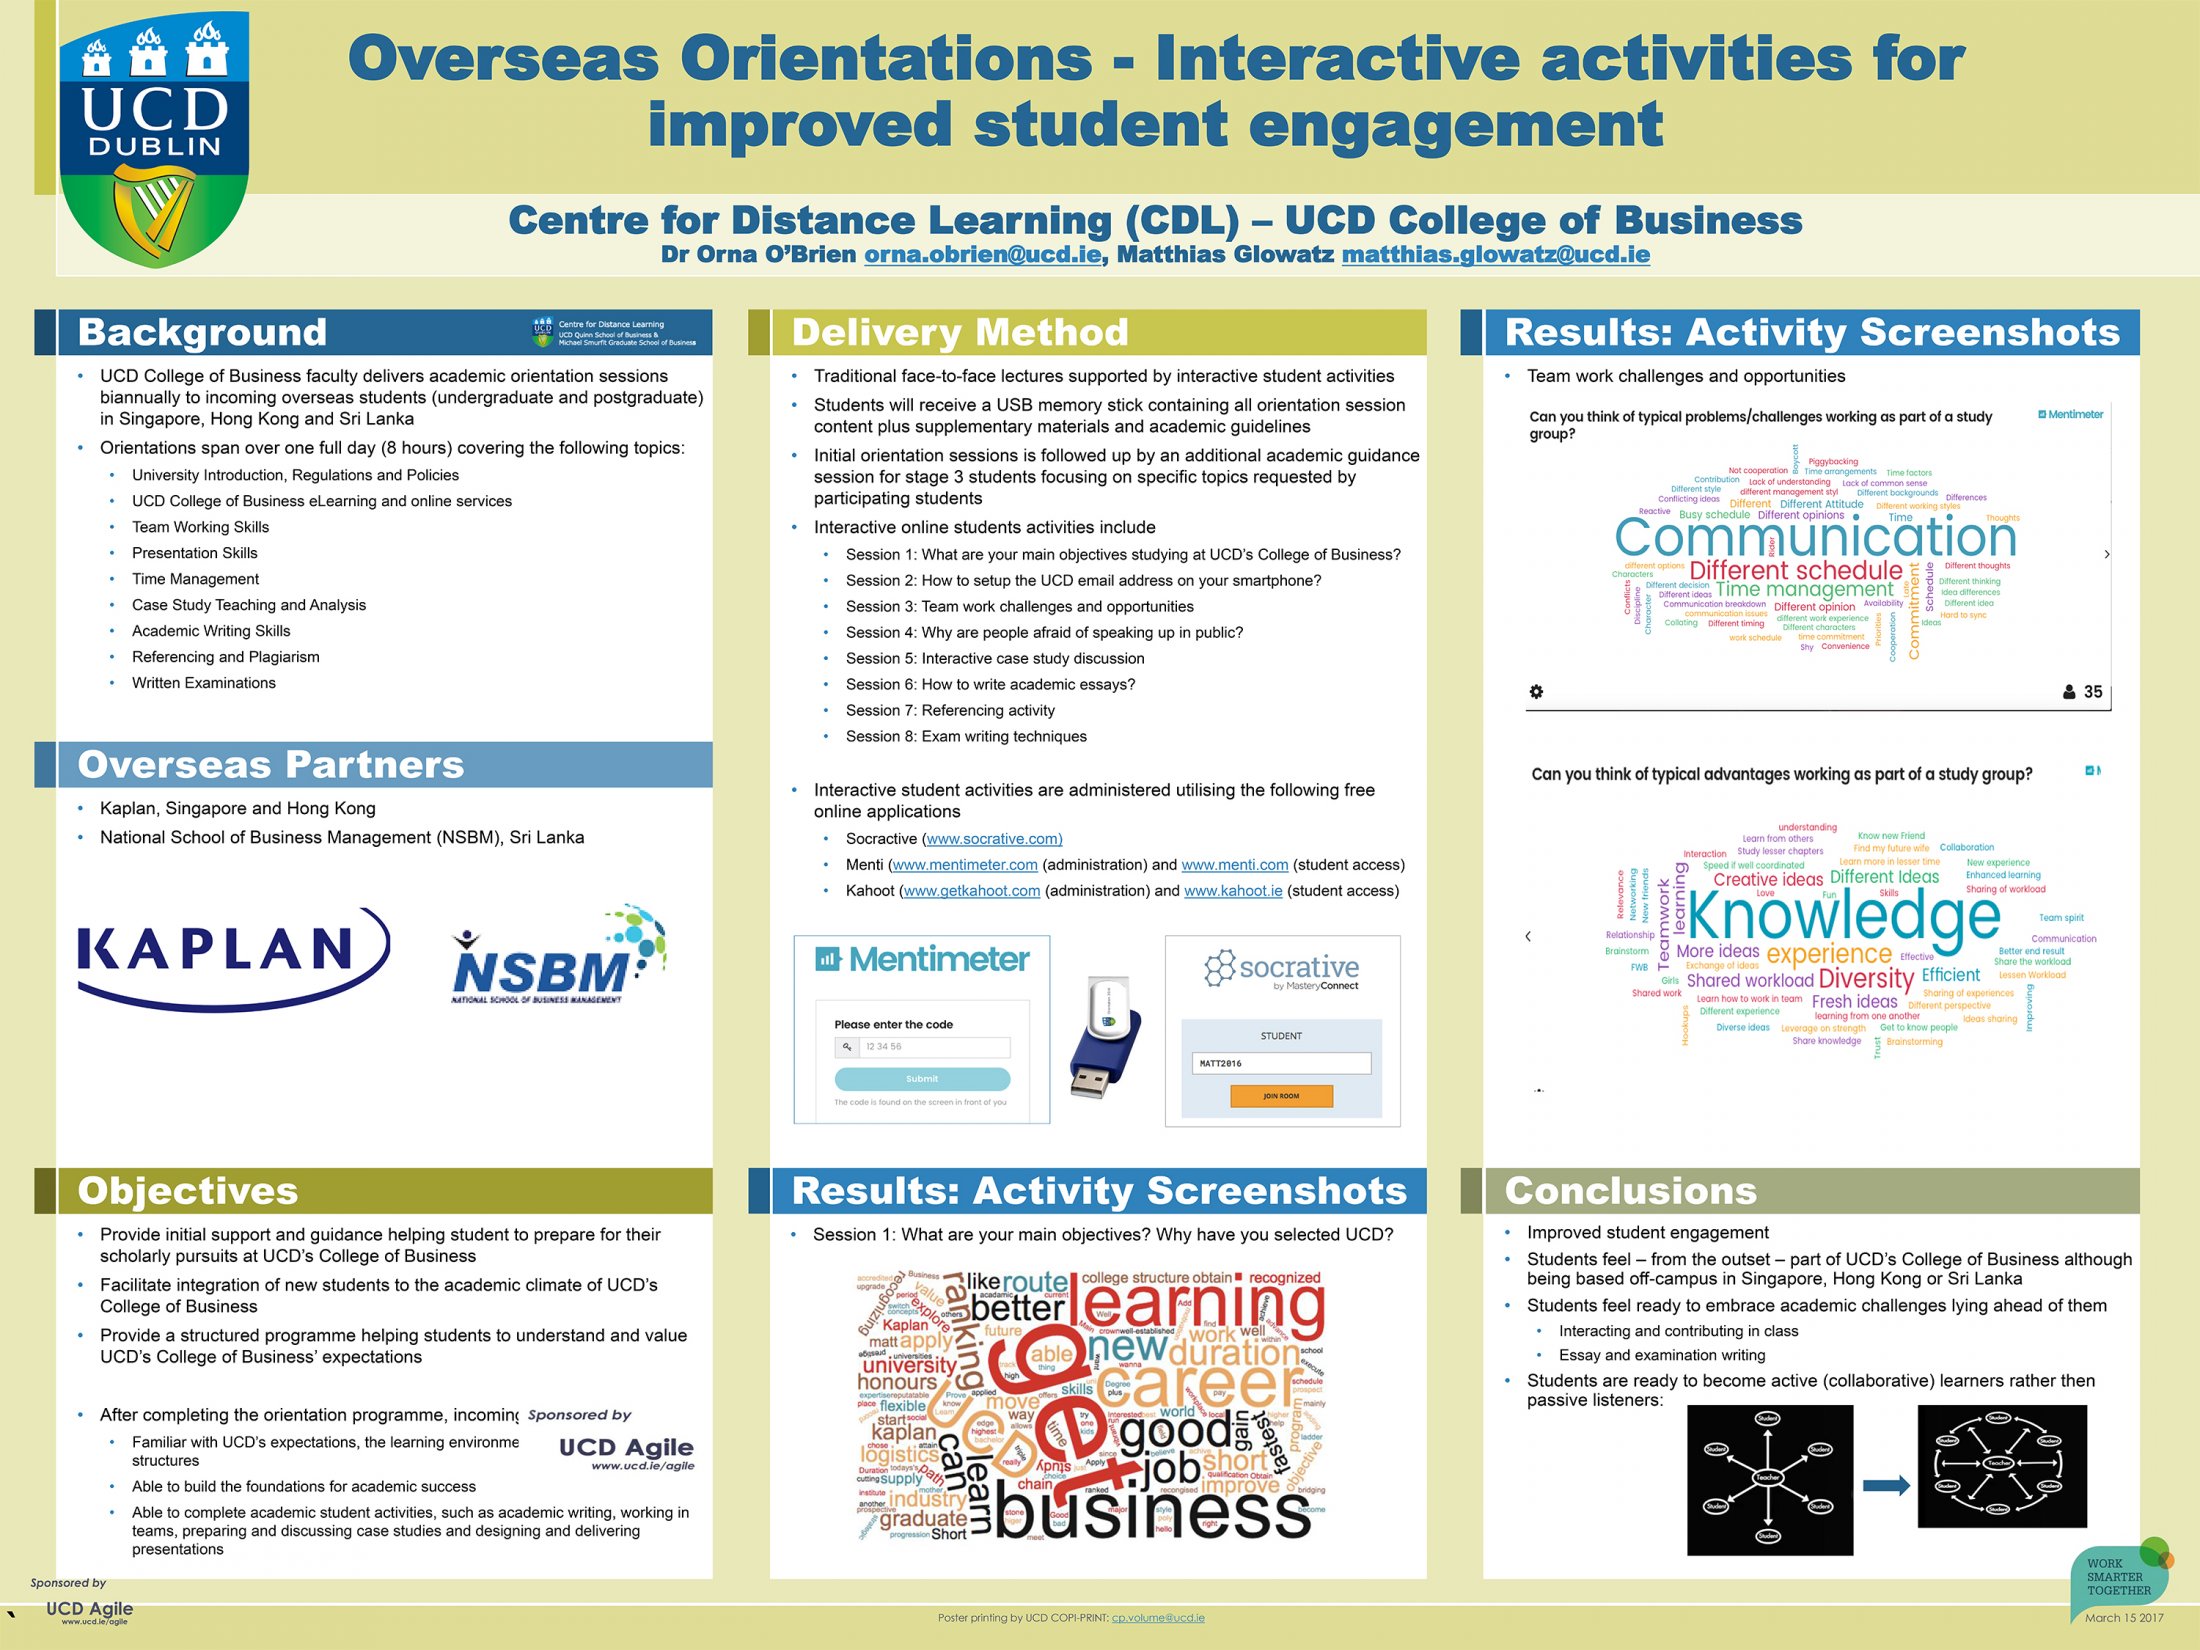 2. Overseas Orientation